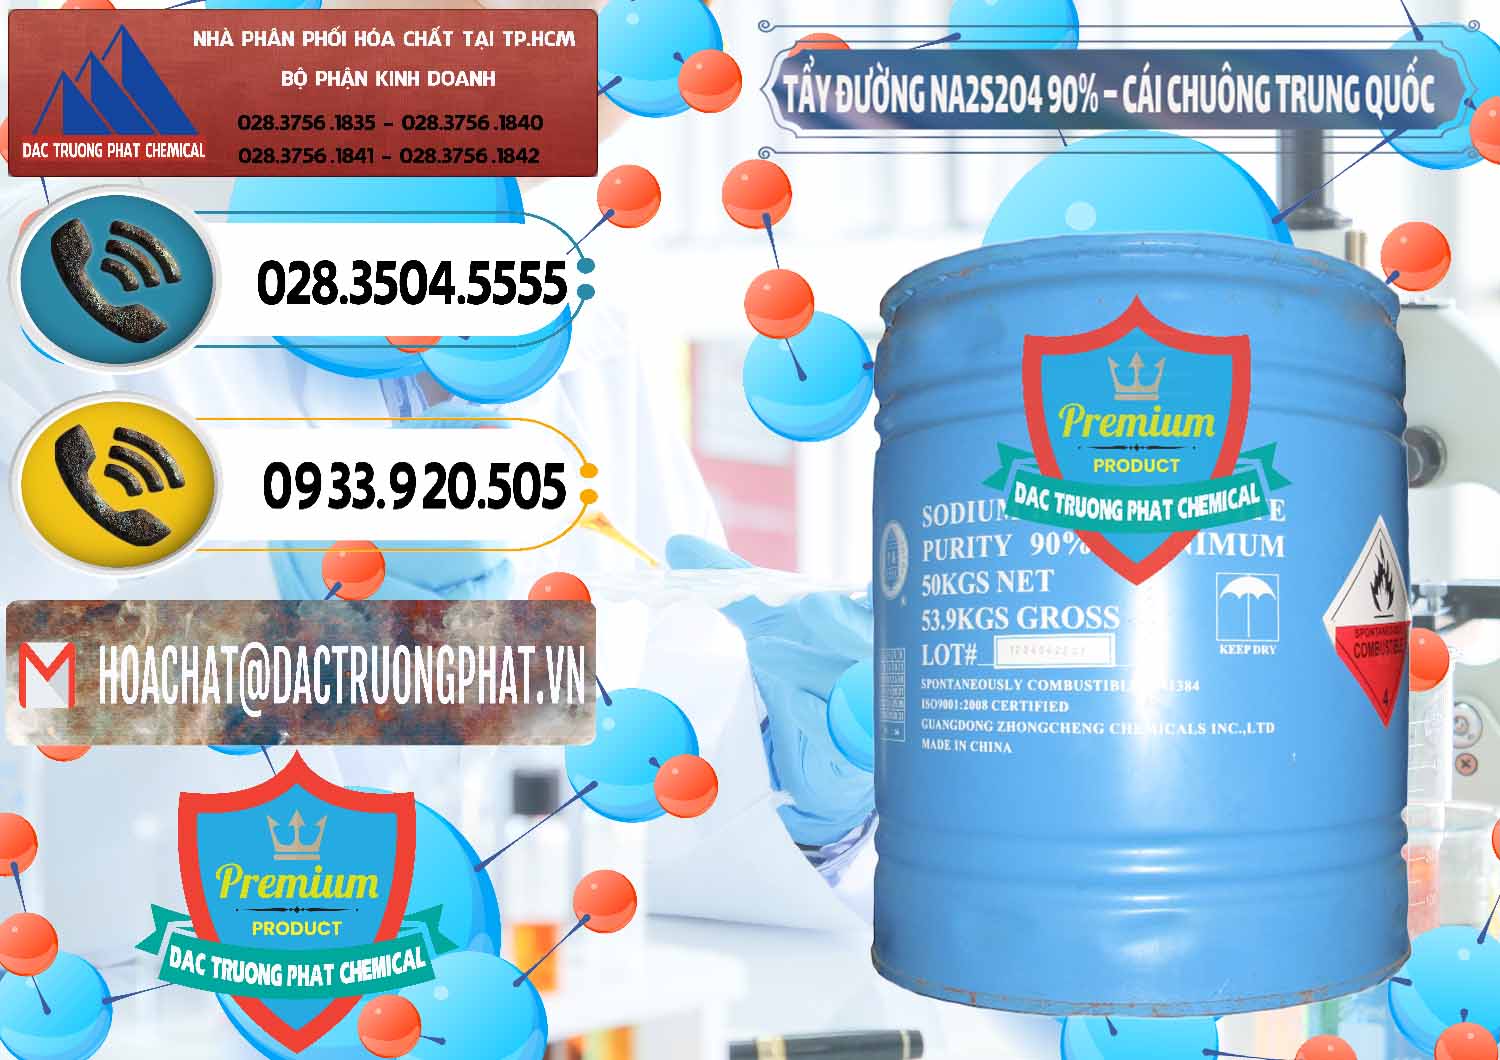 Đơn vị chuyên phân phối và bán Tẩy Đường - NA2S2O4 Logo Cái Chuông Trung Quốc China - 0158 - Cty kinh doanh ( phân phối ) hóa chất tại TP.HCM - hoachatdetnhuom.vn